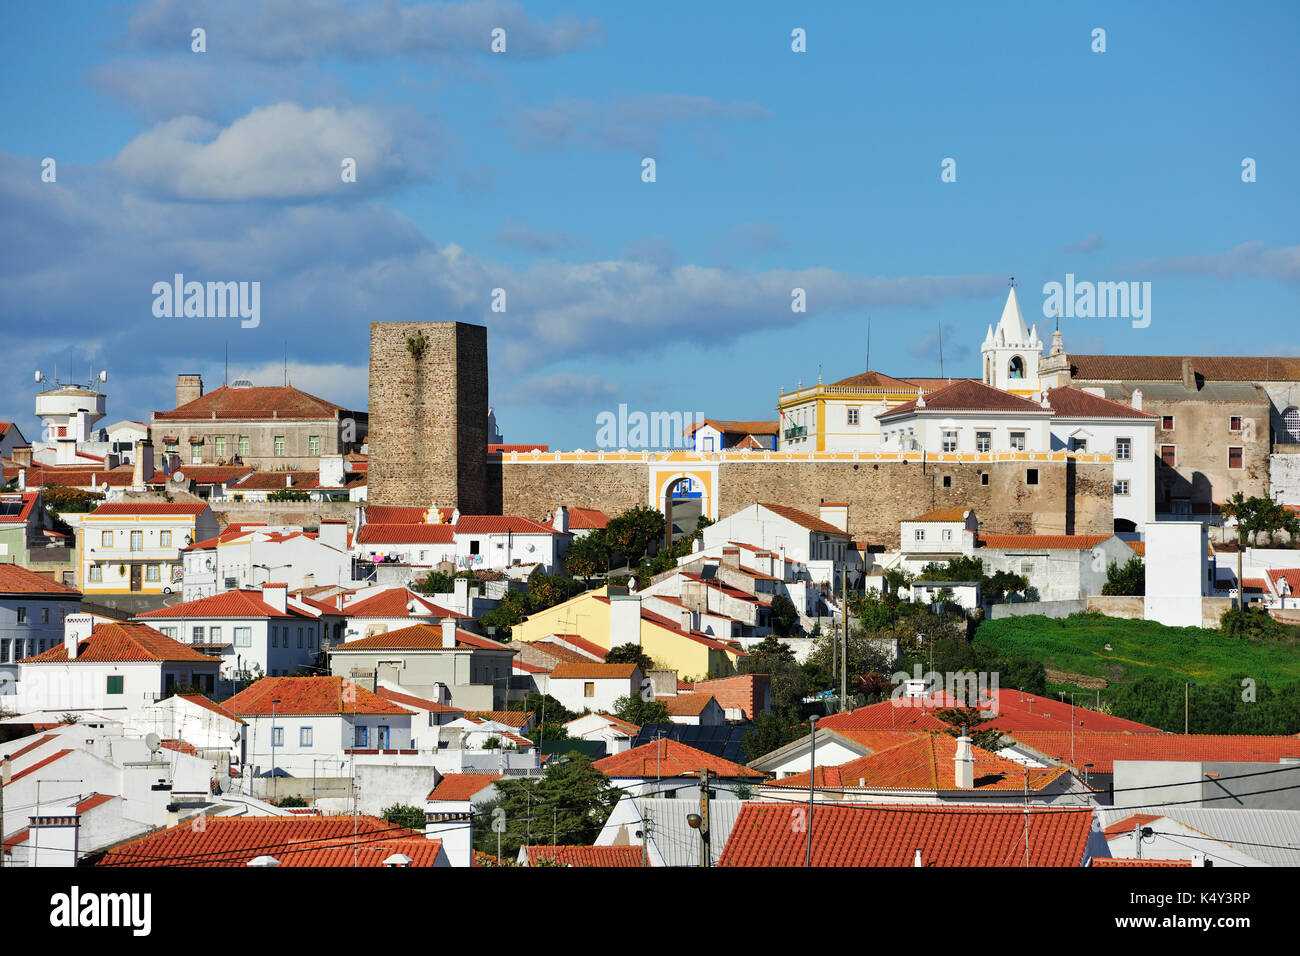 Le village historique de l'avis, le portugal alentejo. Banque D'Images